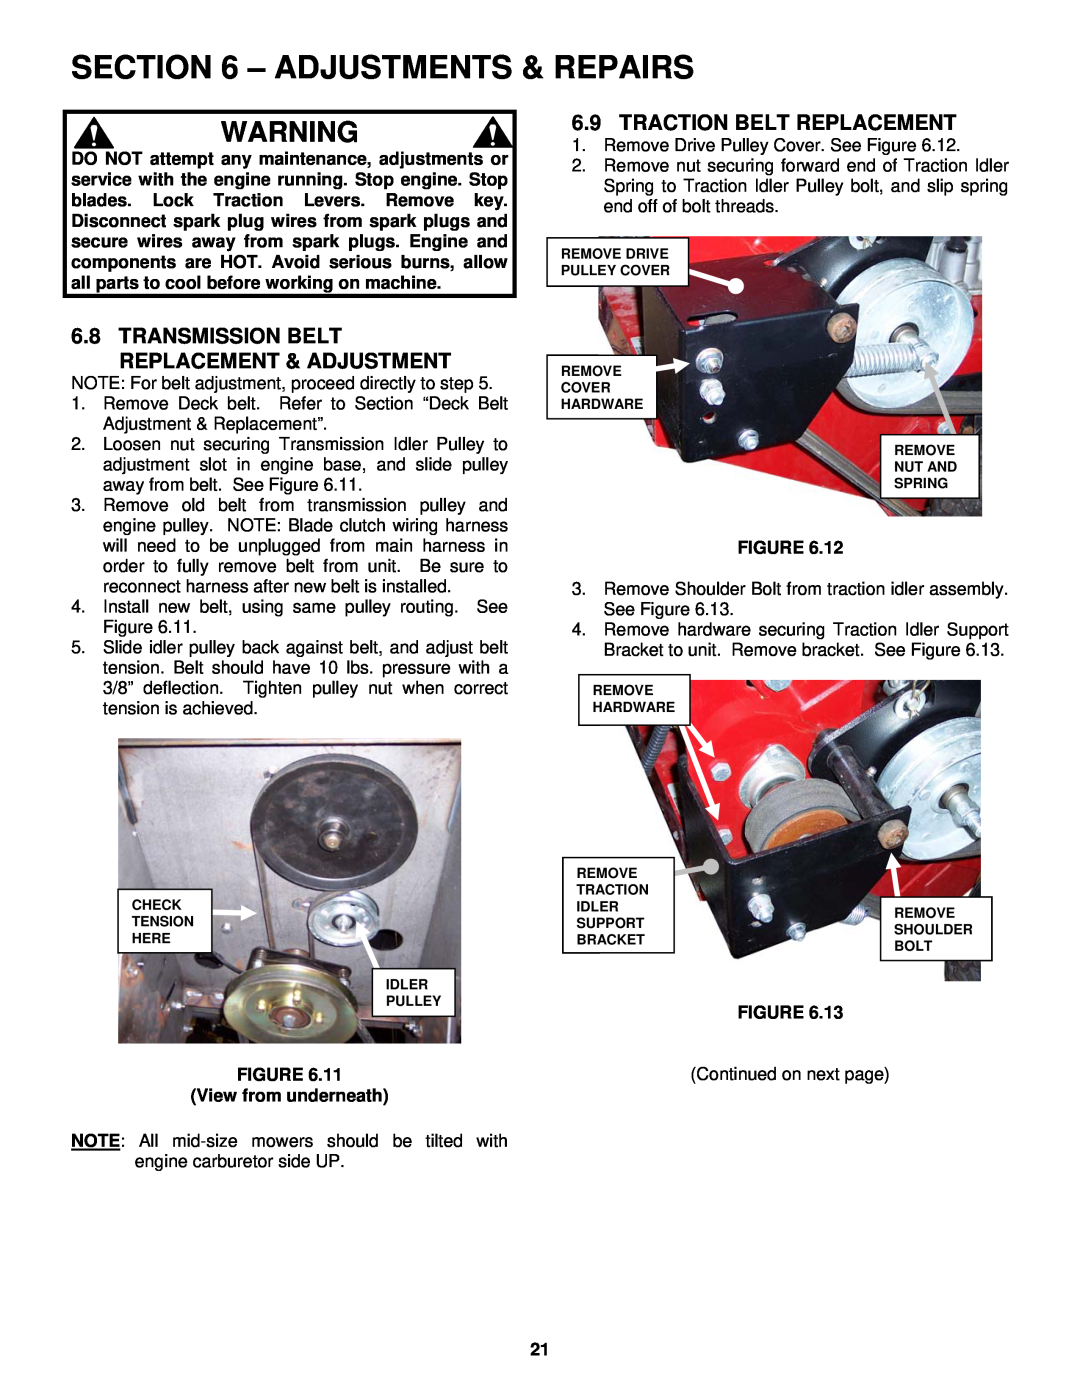 Snapper SGV13321KW Adjustments & Repairs, Transmission Belt Replacement & Adjustment, Traction Belt Replacement 